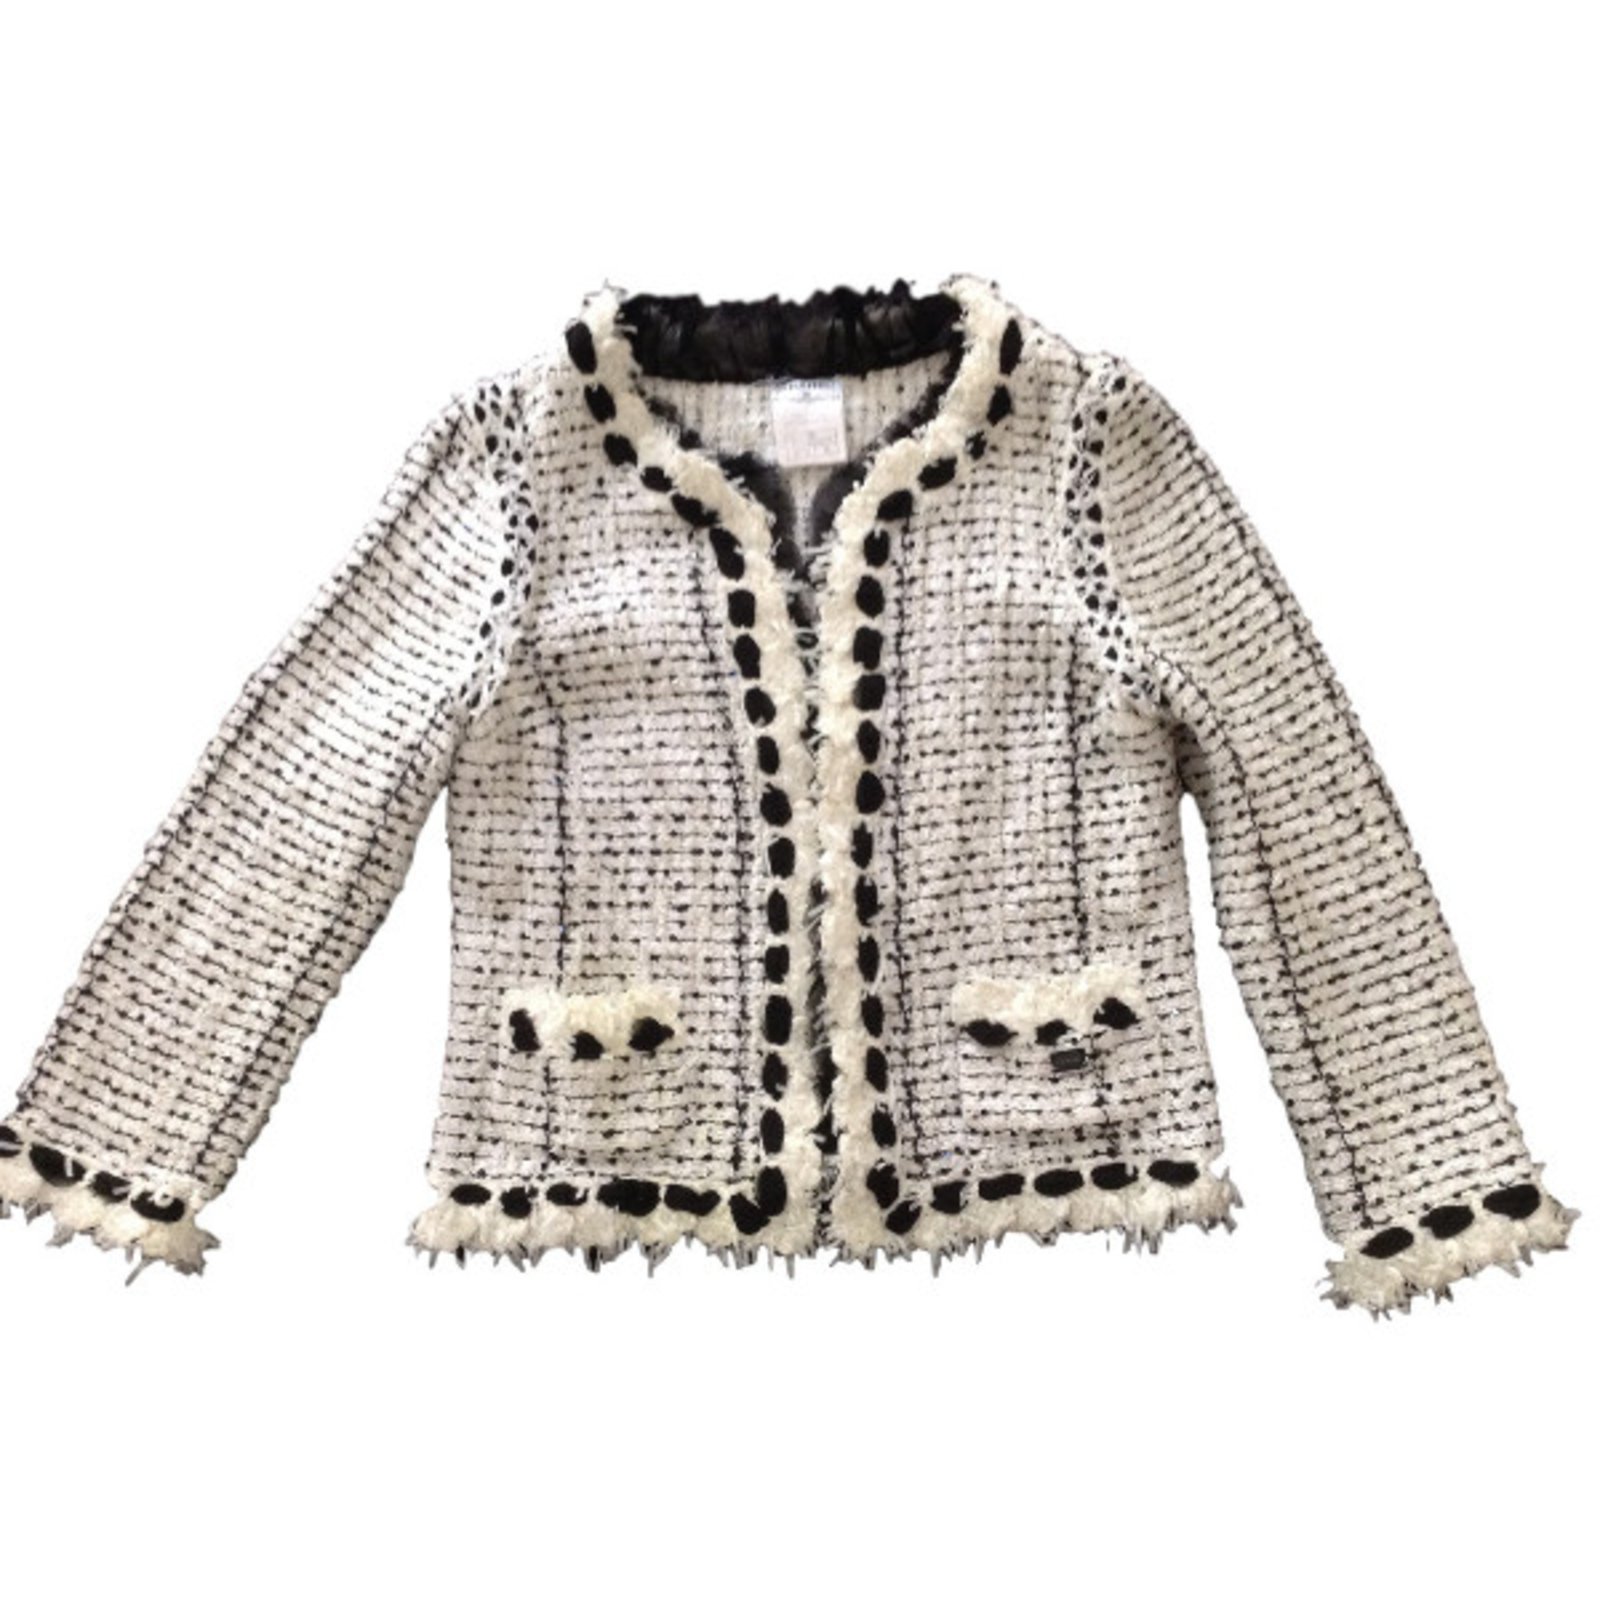 Coco Chanel Tweed Jacket